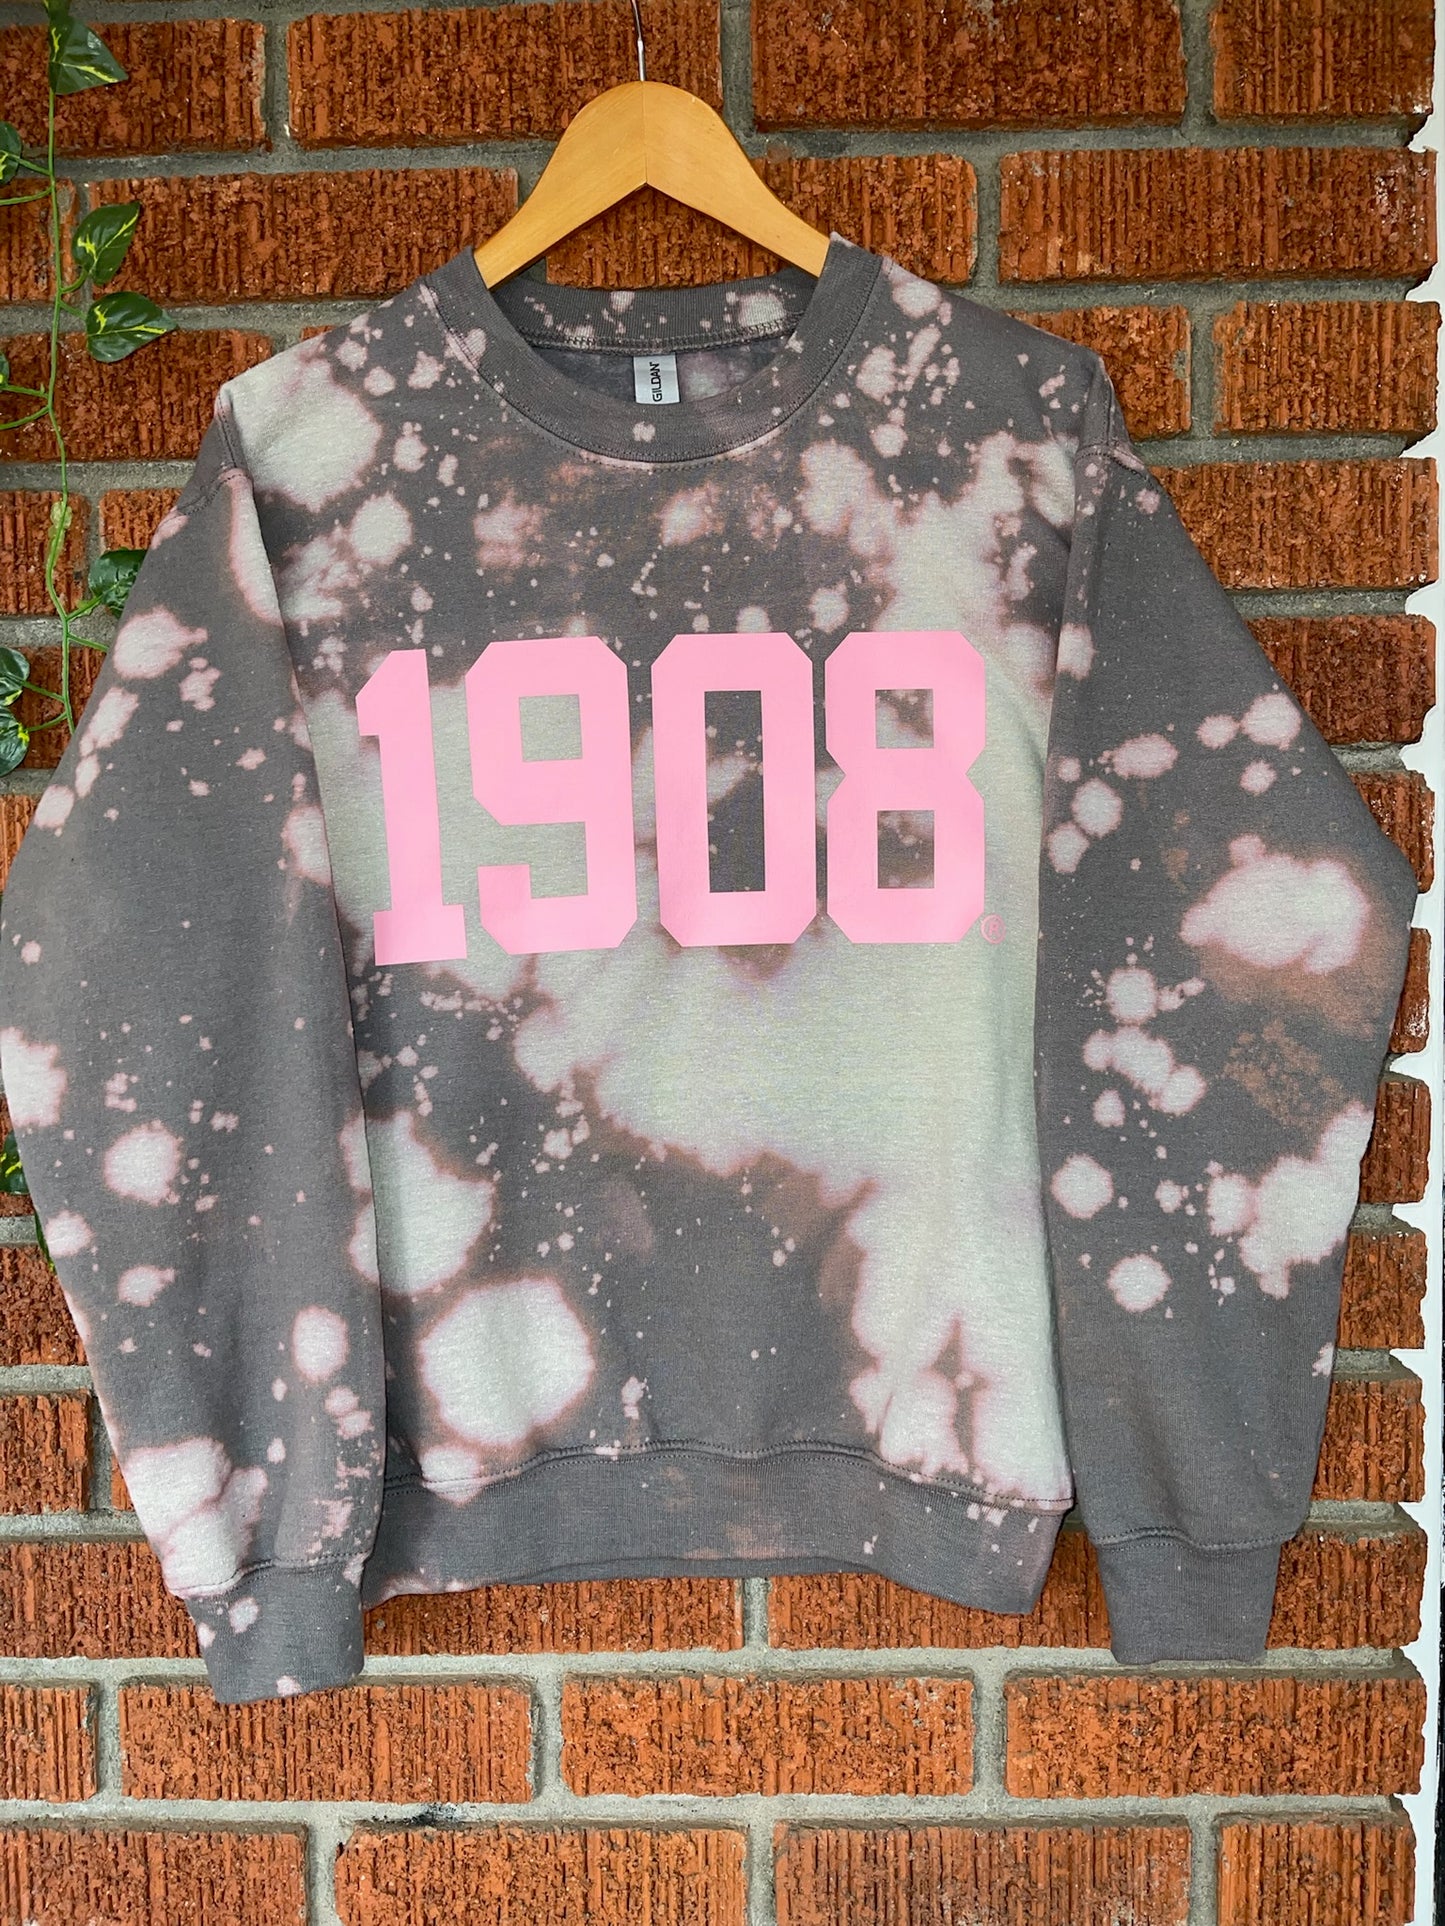 Handmade 1908 AKA Charcoal with Pink Crew Neck Sweatshirt